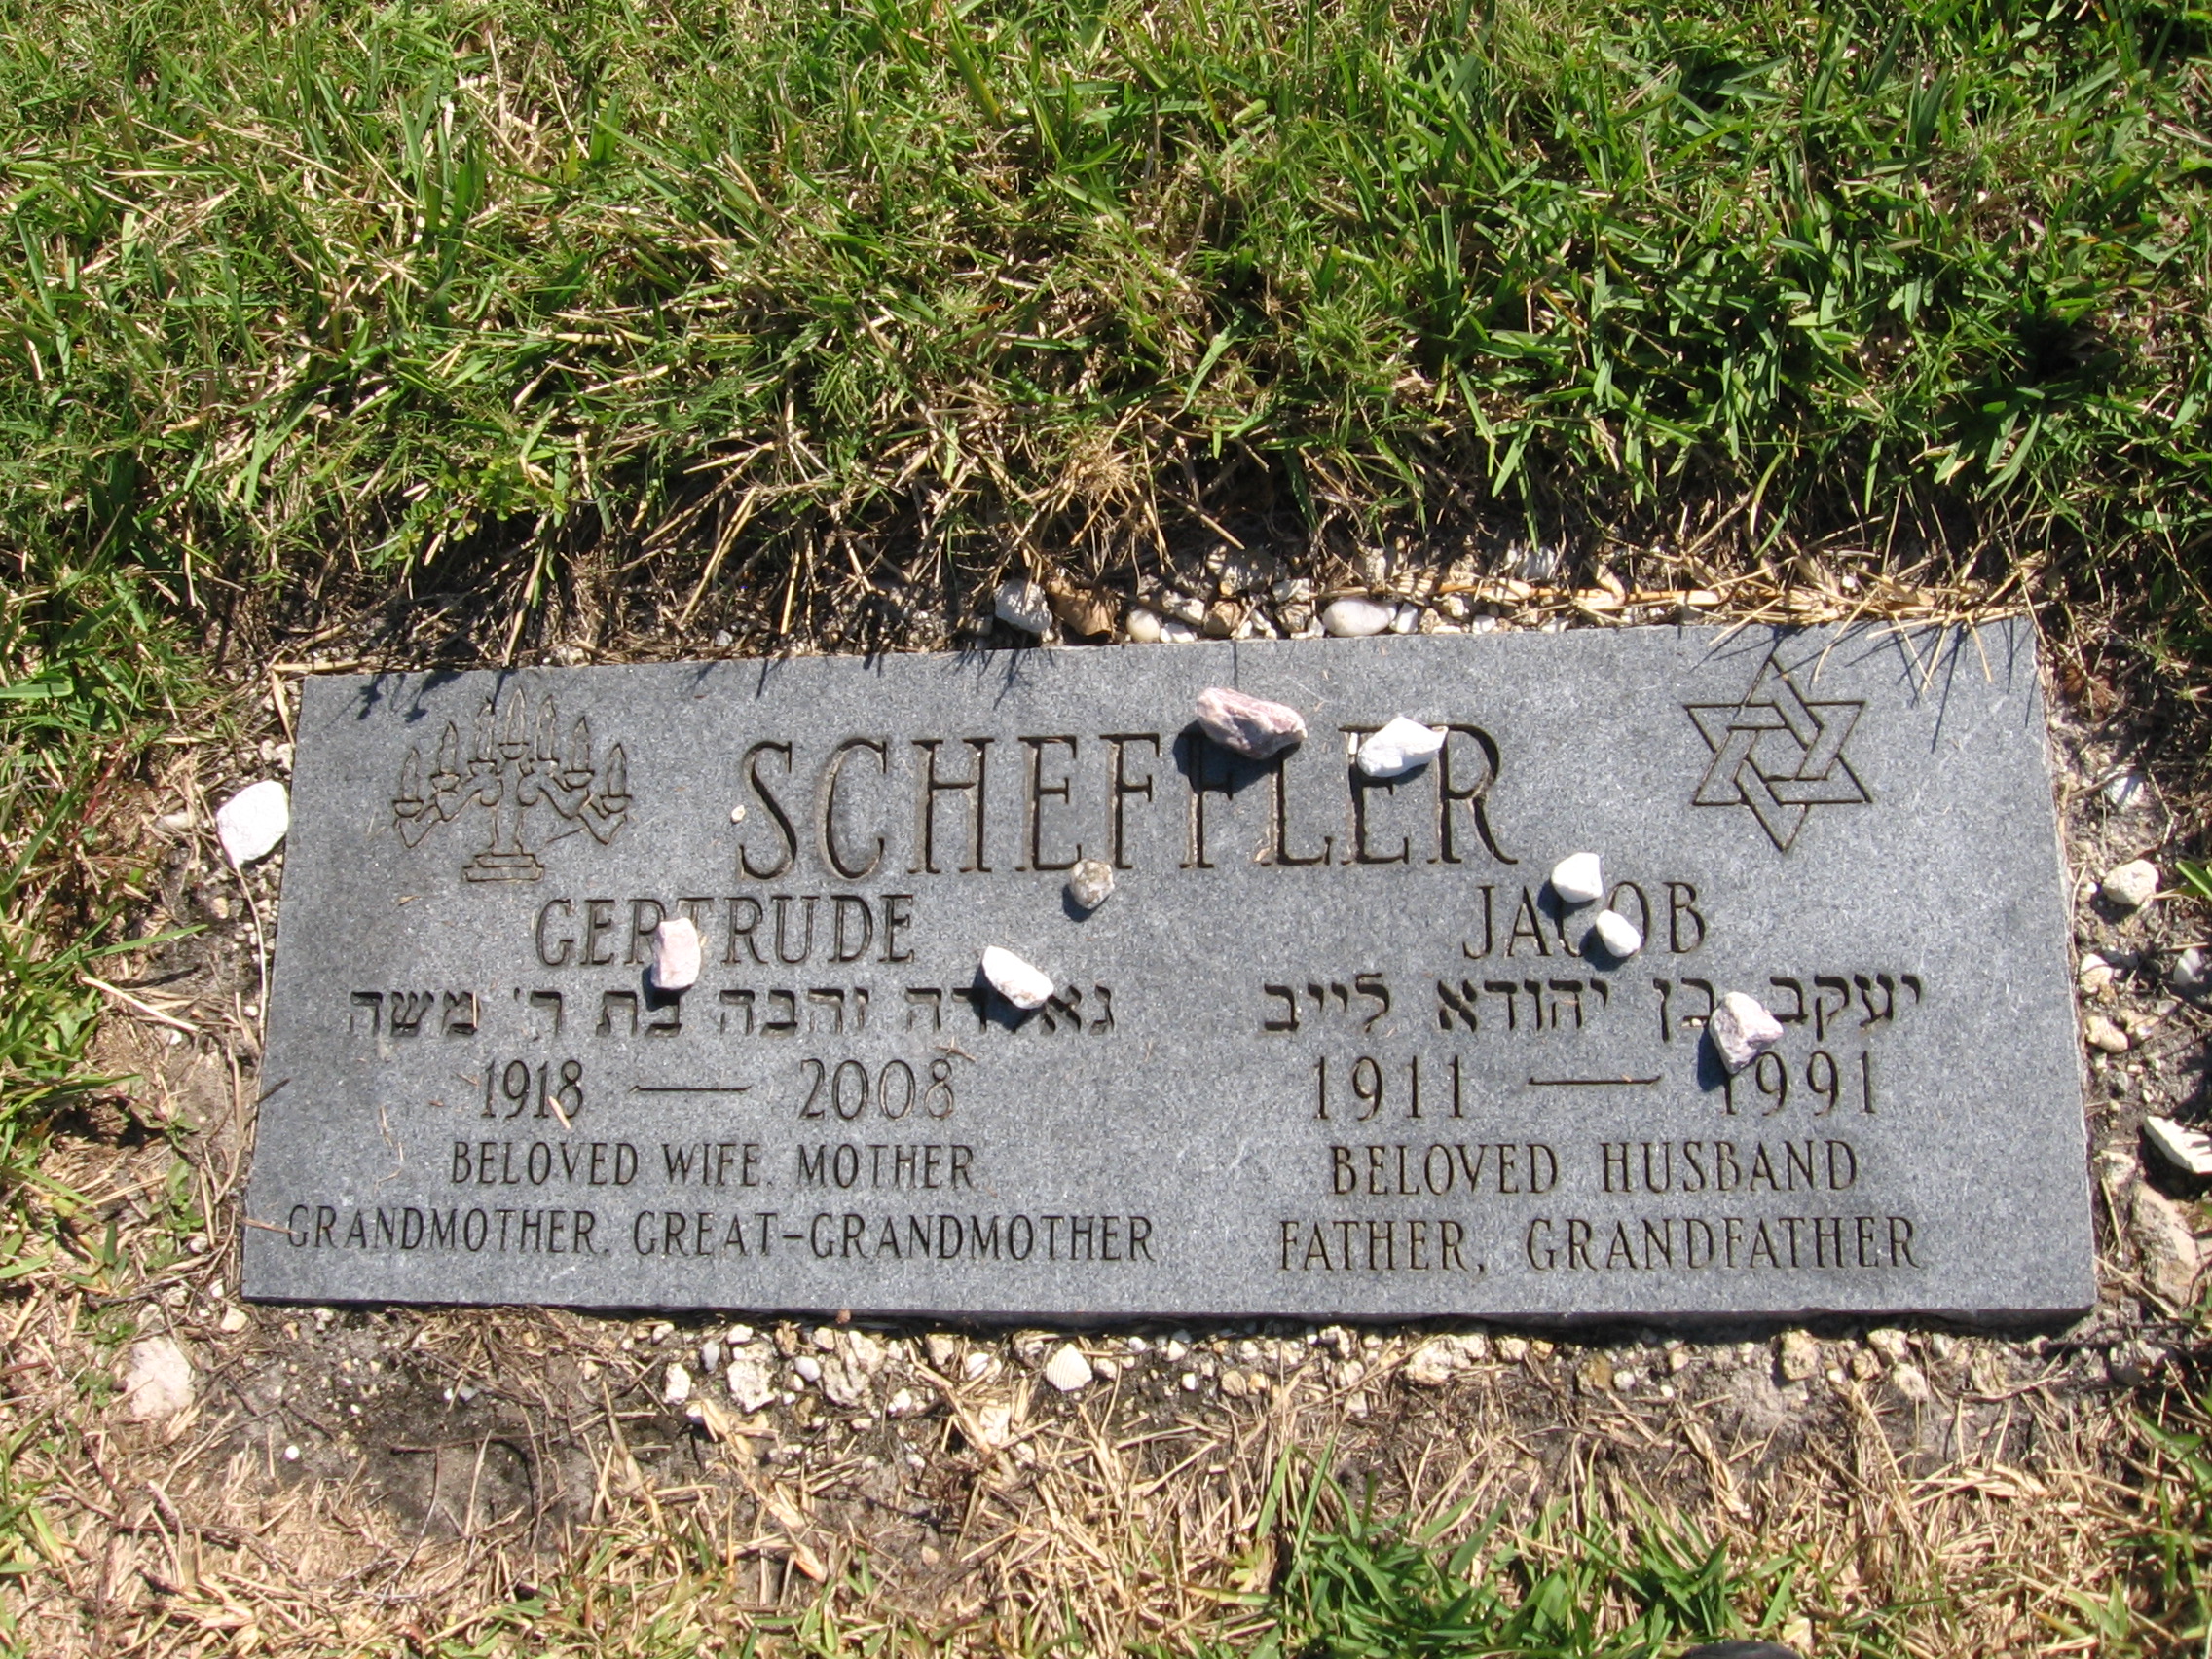 Jacob Scheffler